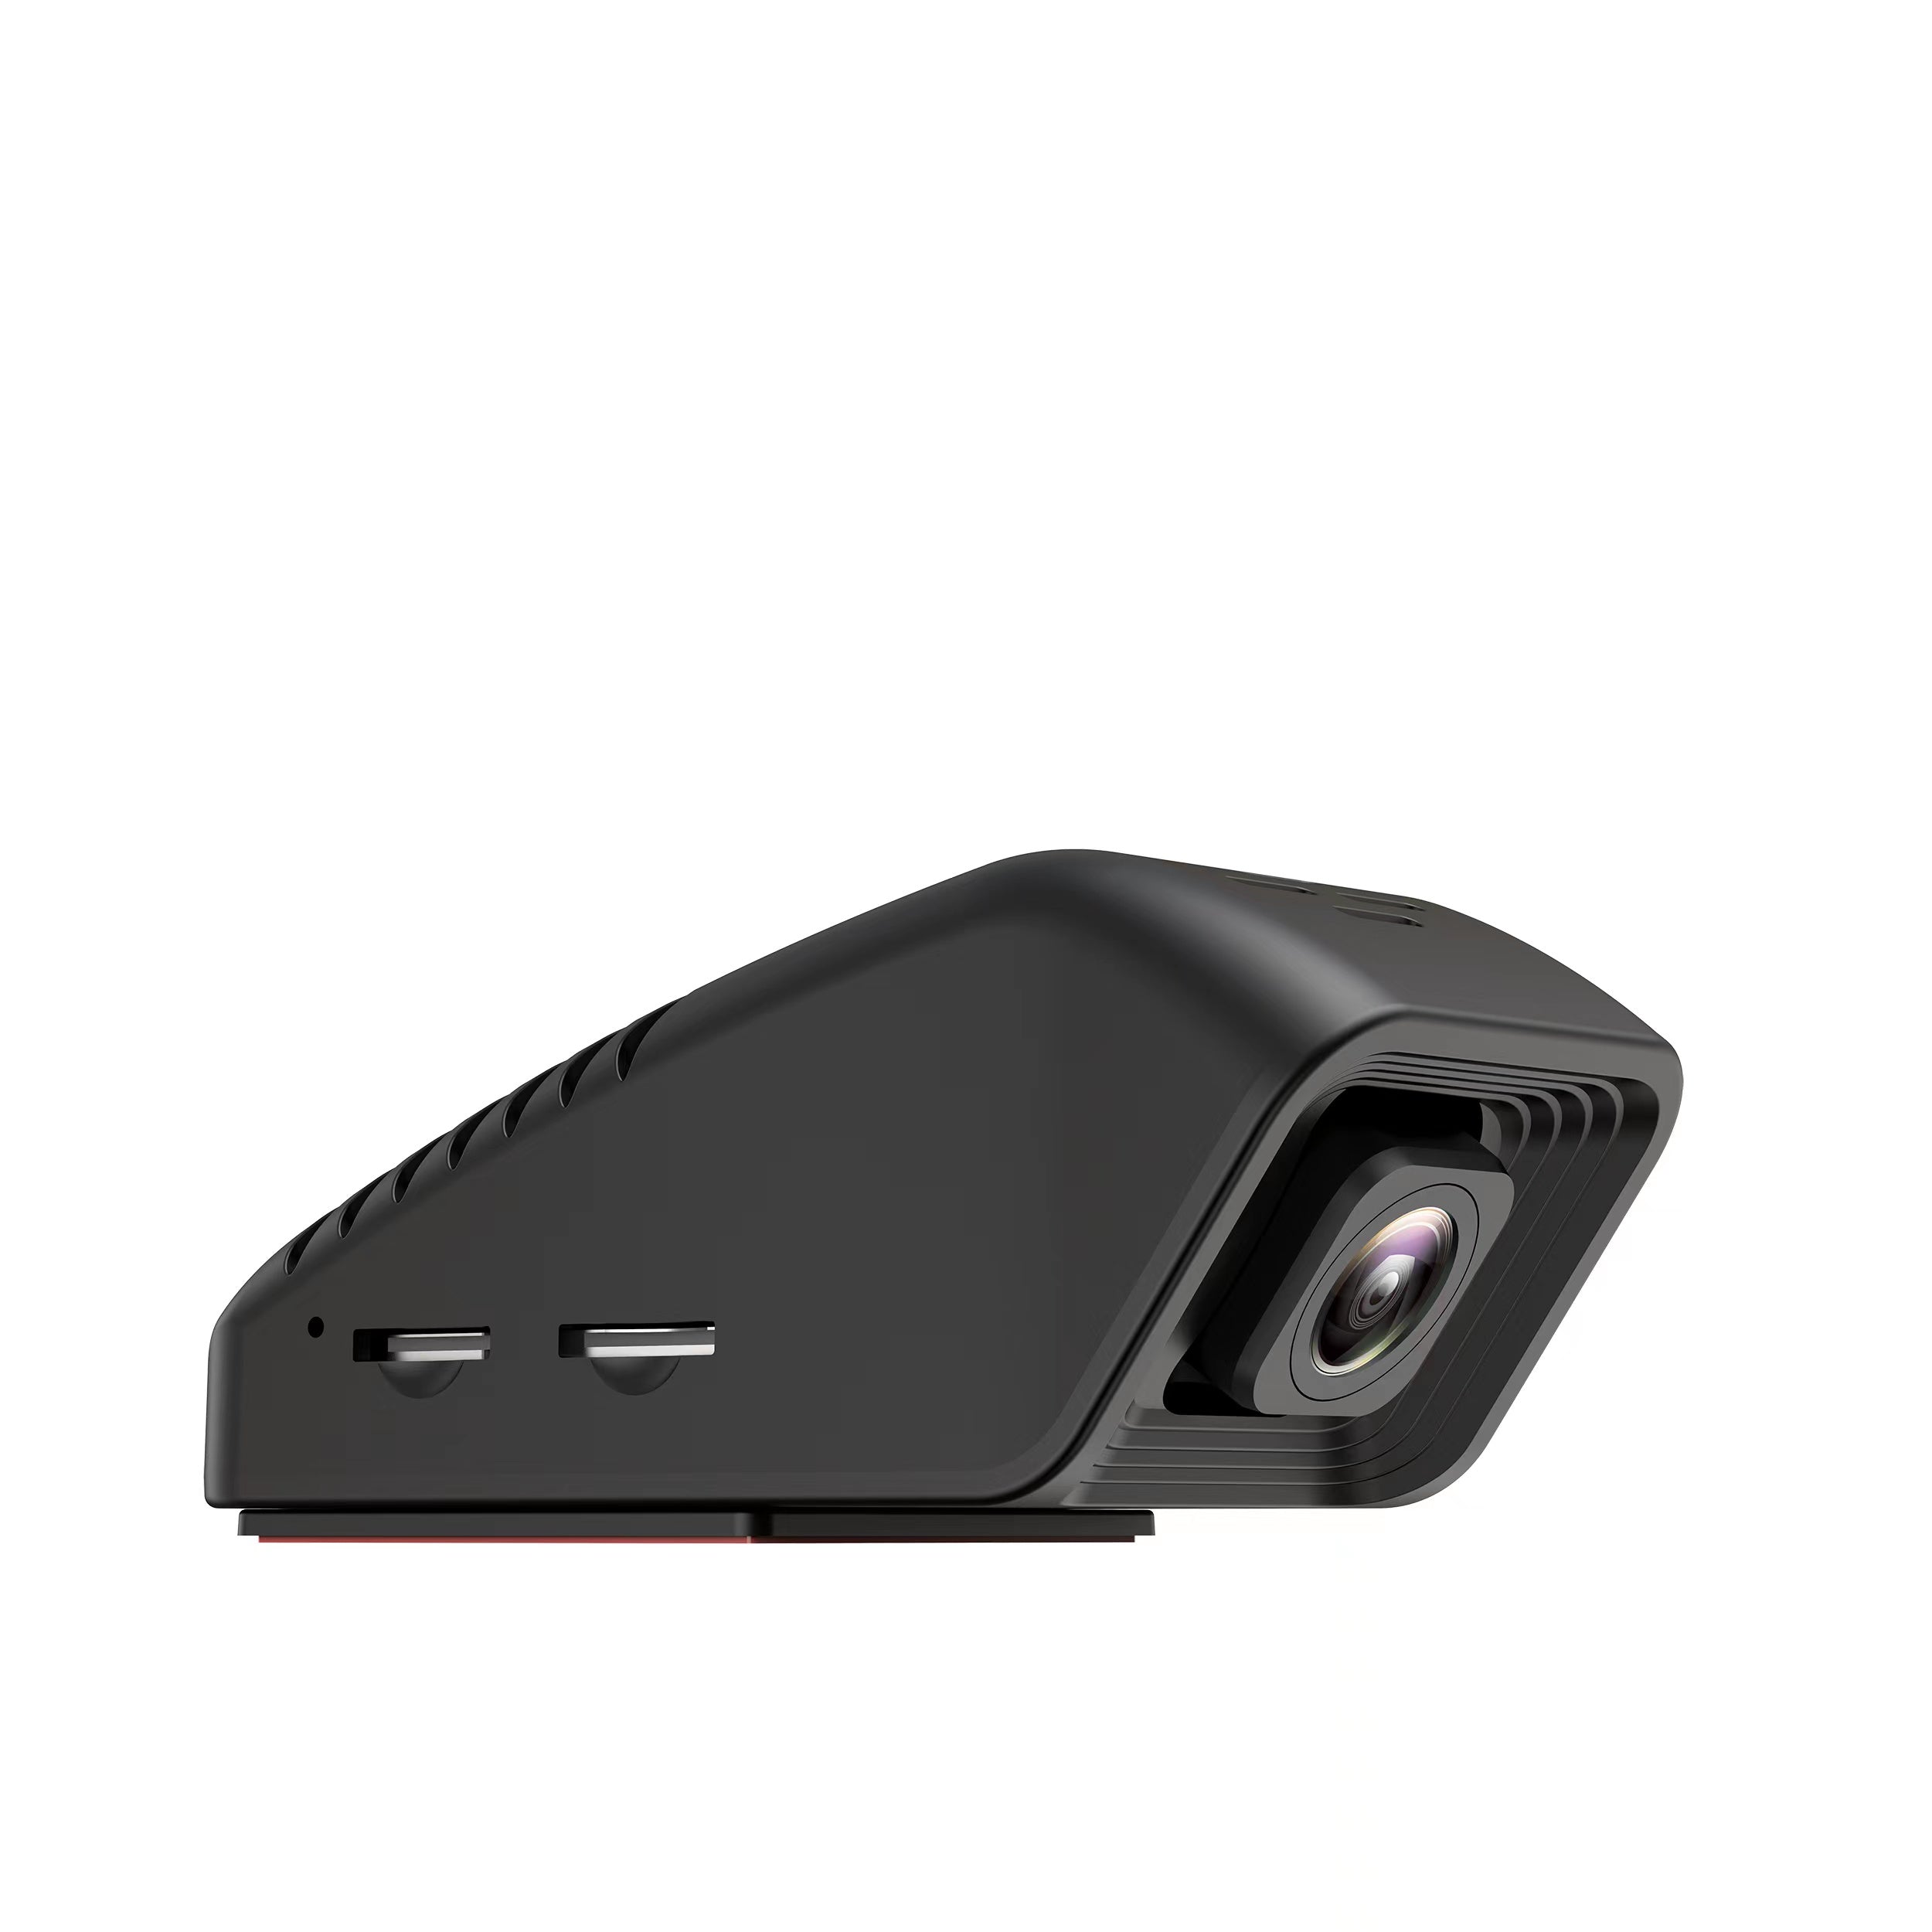 4G, 1080P Fuld HD Dashcam, Livestream, G-Censor, GPS og meget mere